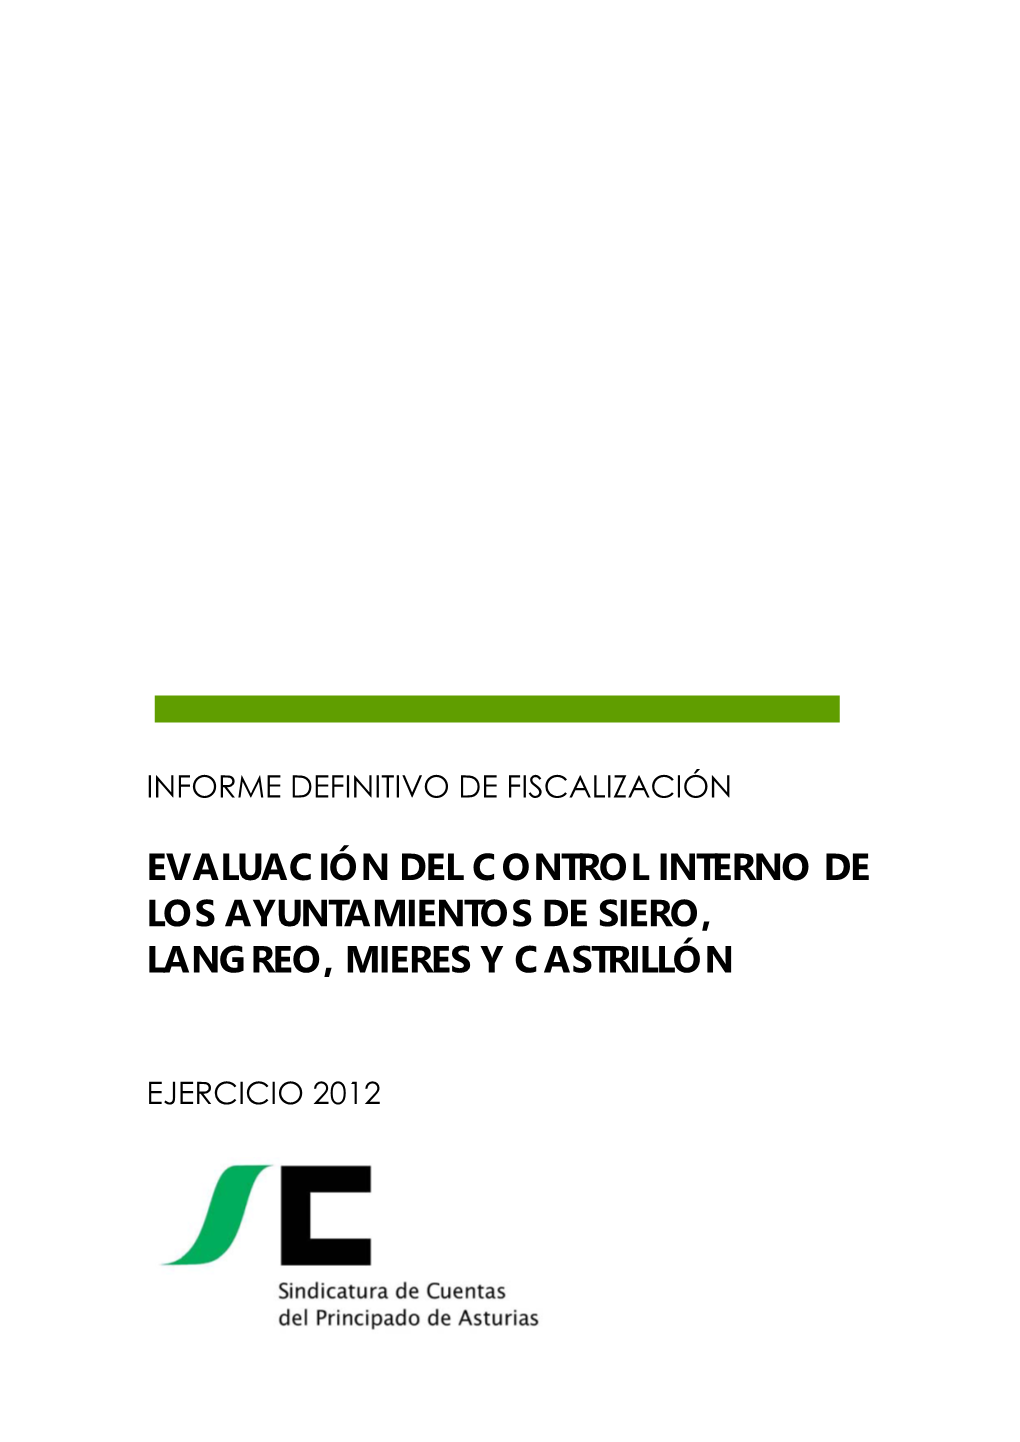 Evaluación Del Control Interno De Los Ayuntamientos De Siero, Langreo, Mieres Y Castrillón